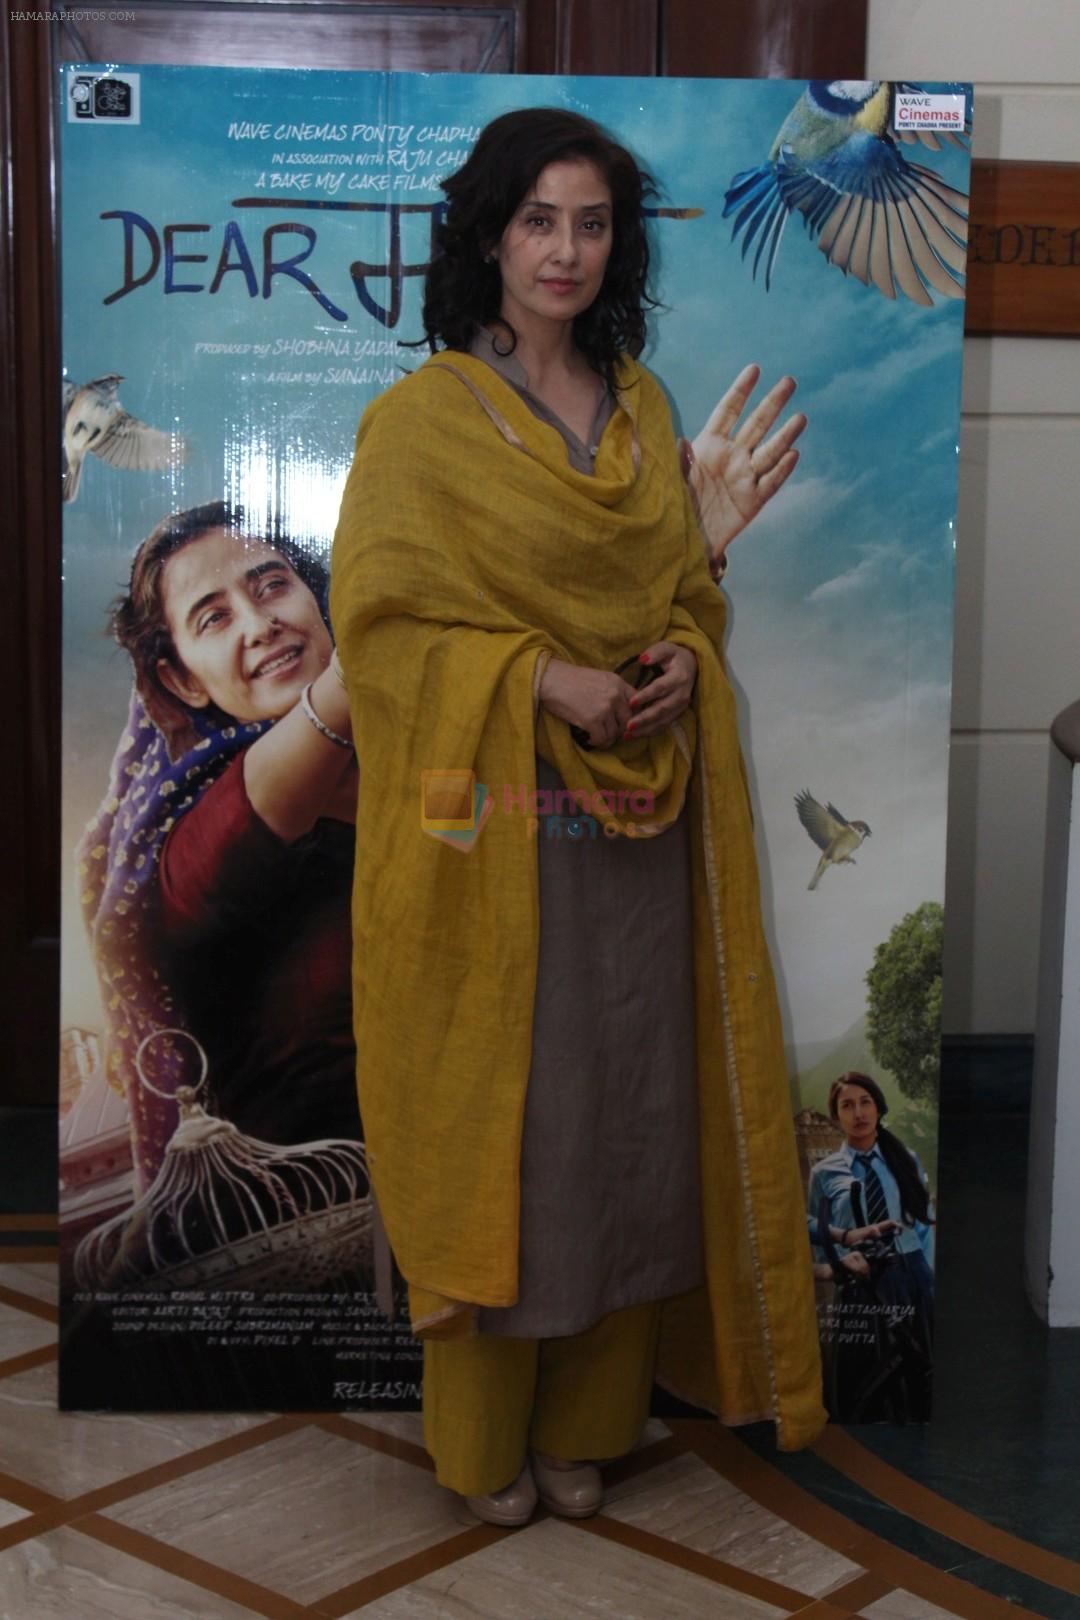 Manisha Koirala Interaction With Manisha Koirala for Film Dear Maya on 22nd May 2017